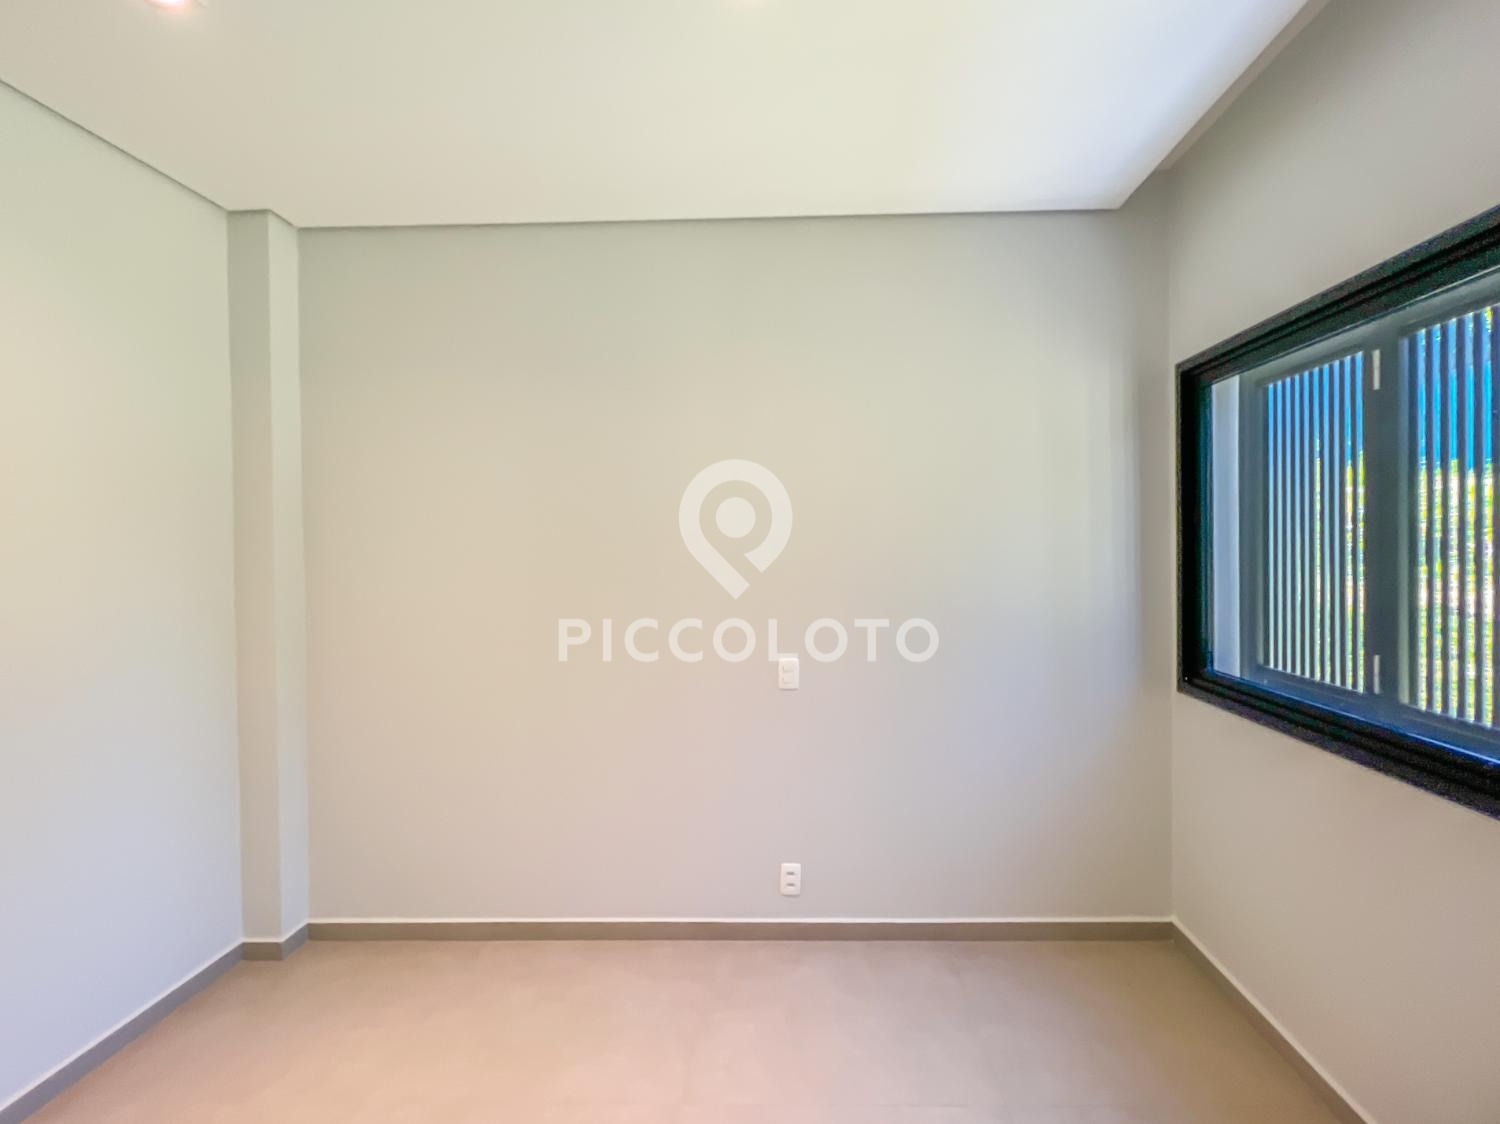 Piccoloto -Casa à venda no Itupeva em Itupeva